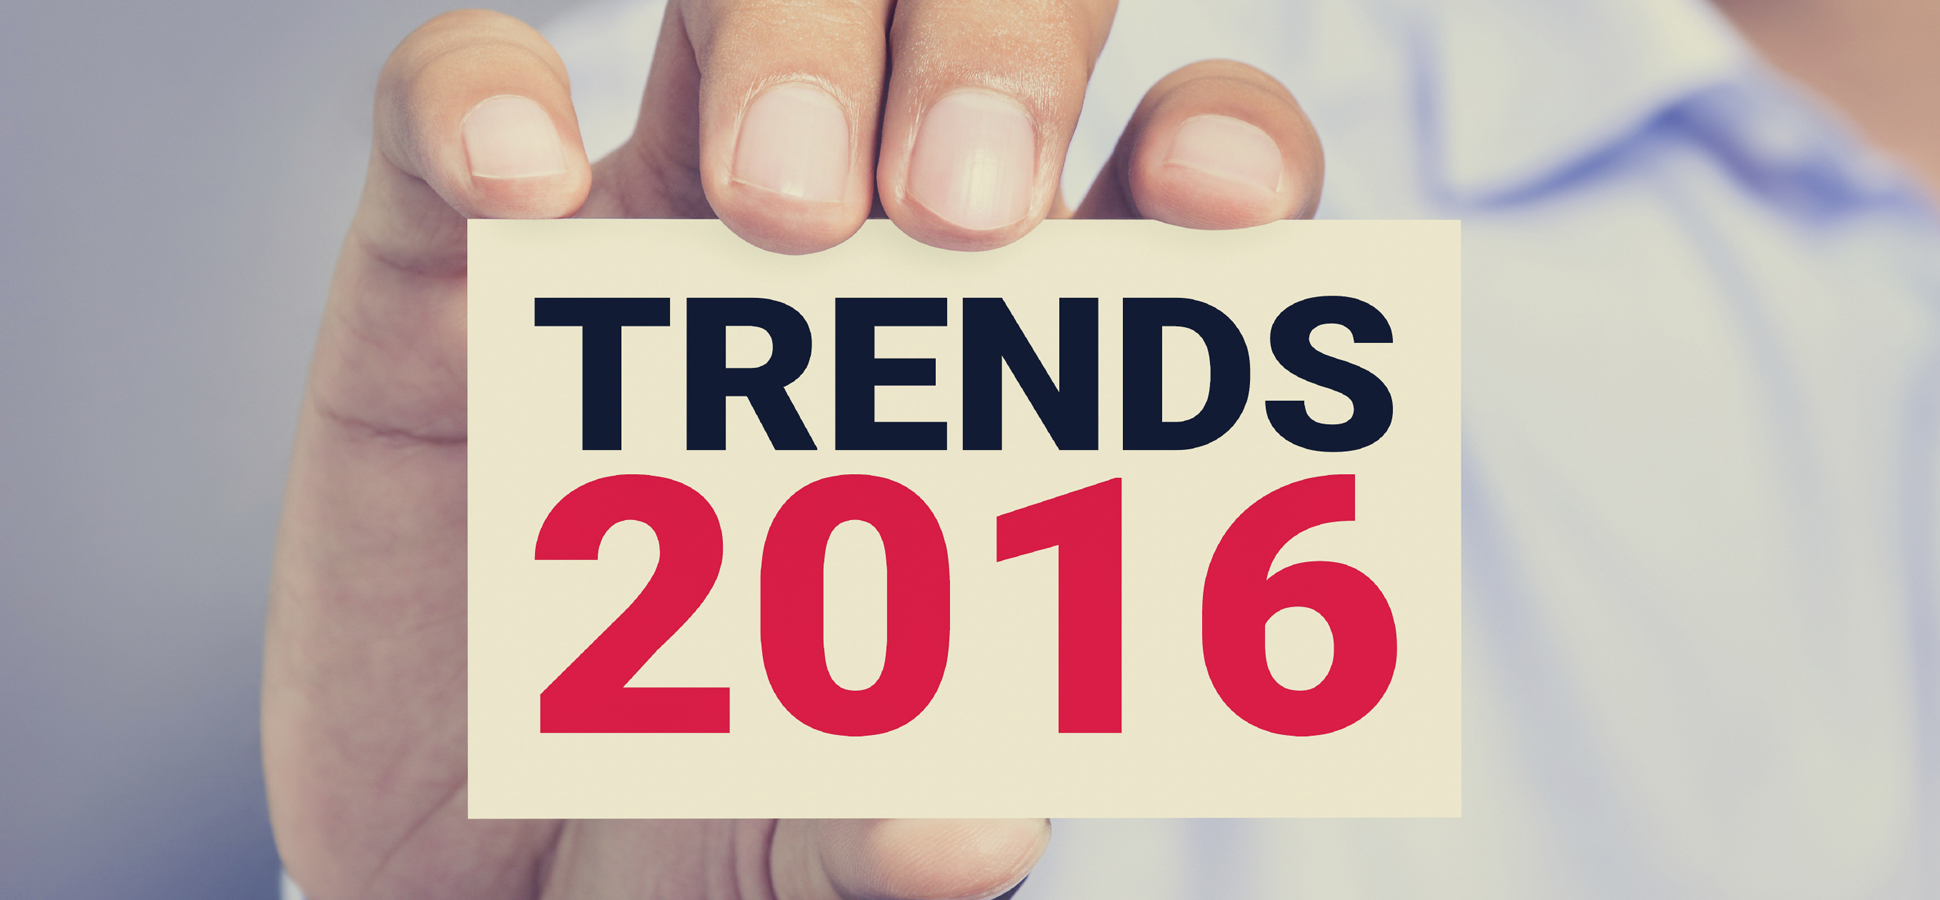 Top 5 xu hướng cho các doanh nghiệp đang phát triển trong năm 2016